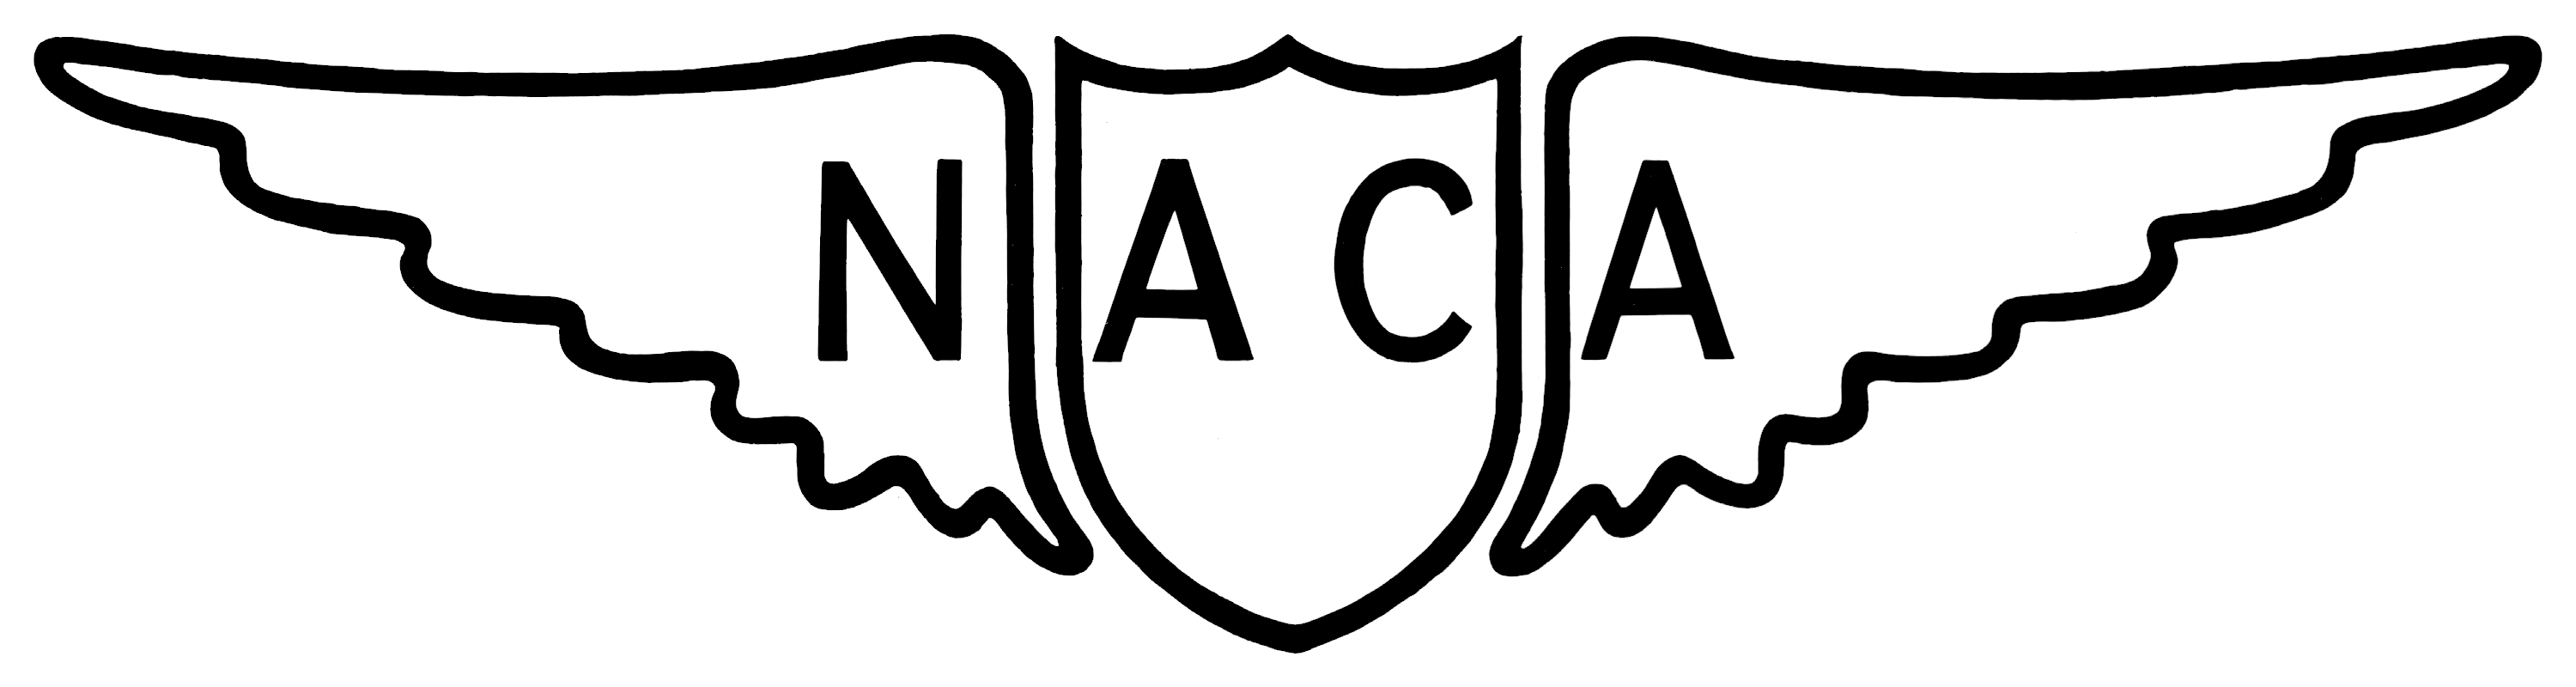 Aeronautics NACA Logo - NACA Logo.png